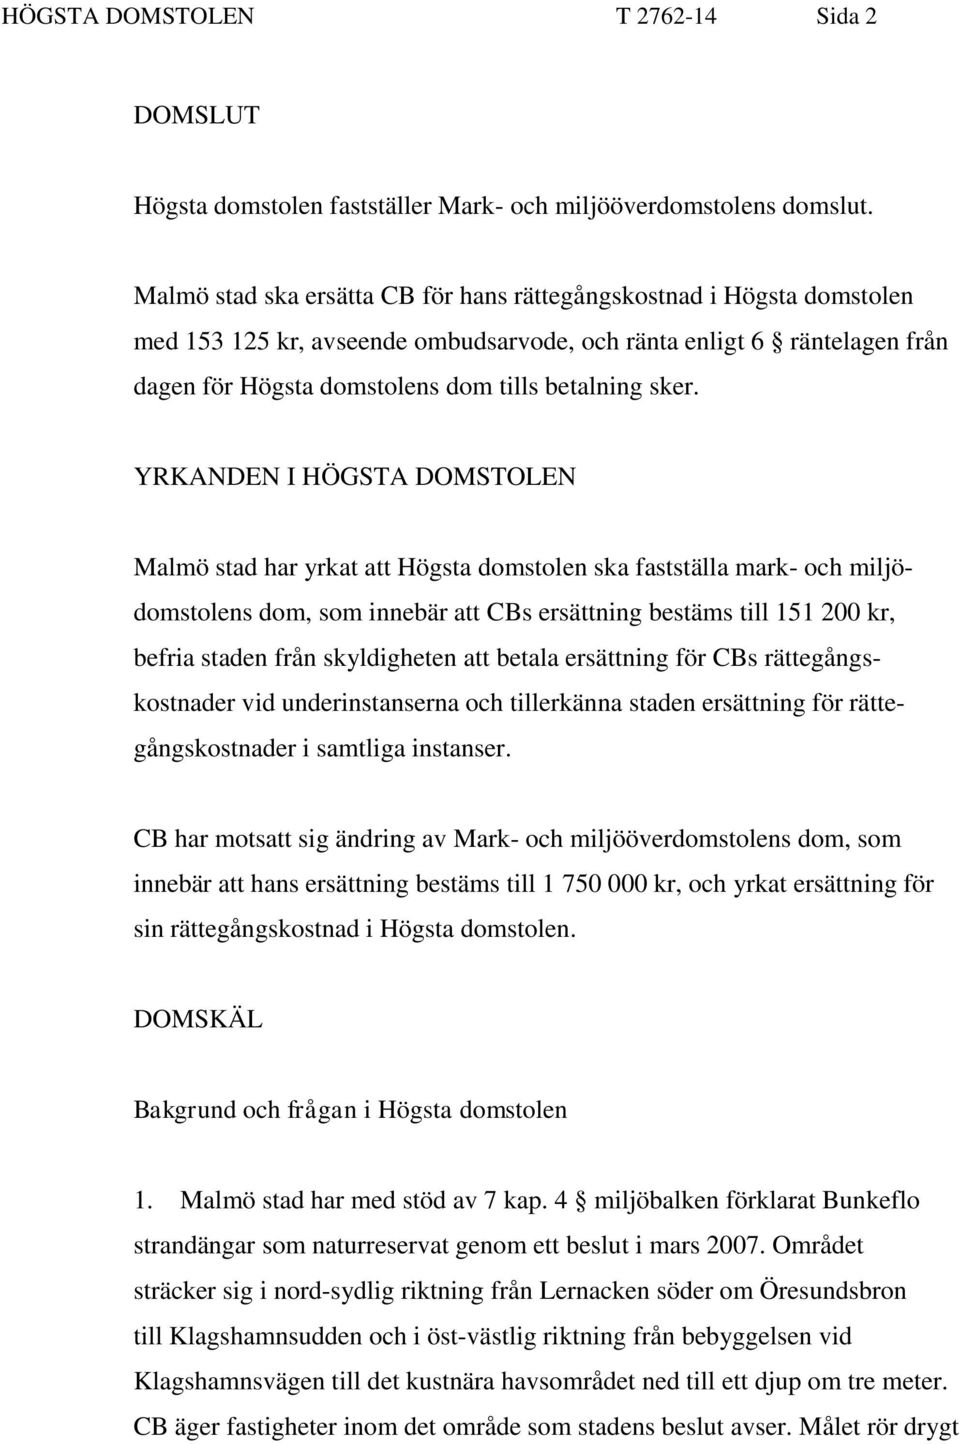 YRKANDEN I HÖGSTA DOMSTOLEN Malmö stad har yrkat att Högsta domstolen ska fastställa mark- och miljödomstolens dom, som innebär att CBs ersättning bestäms till 151 200 kr, befria staden från